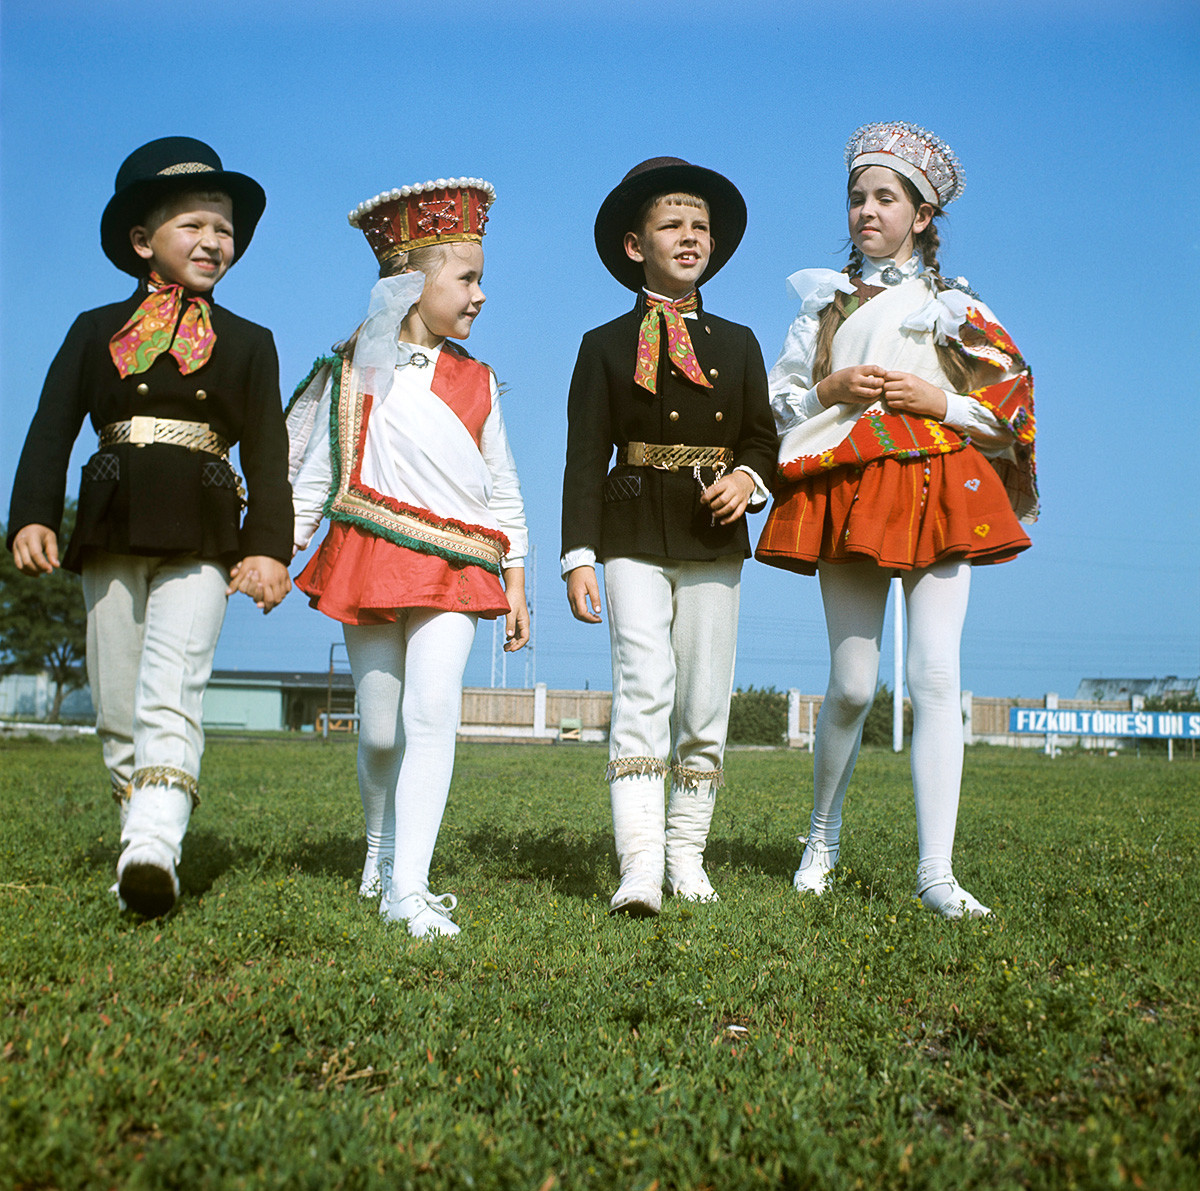 Participants d’une fête folklorique lettonne